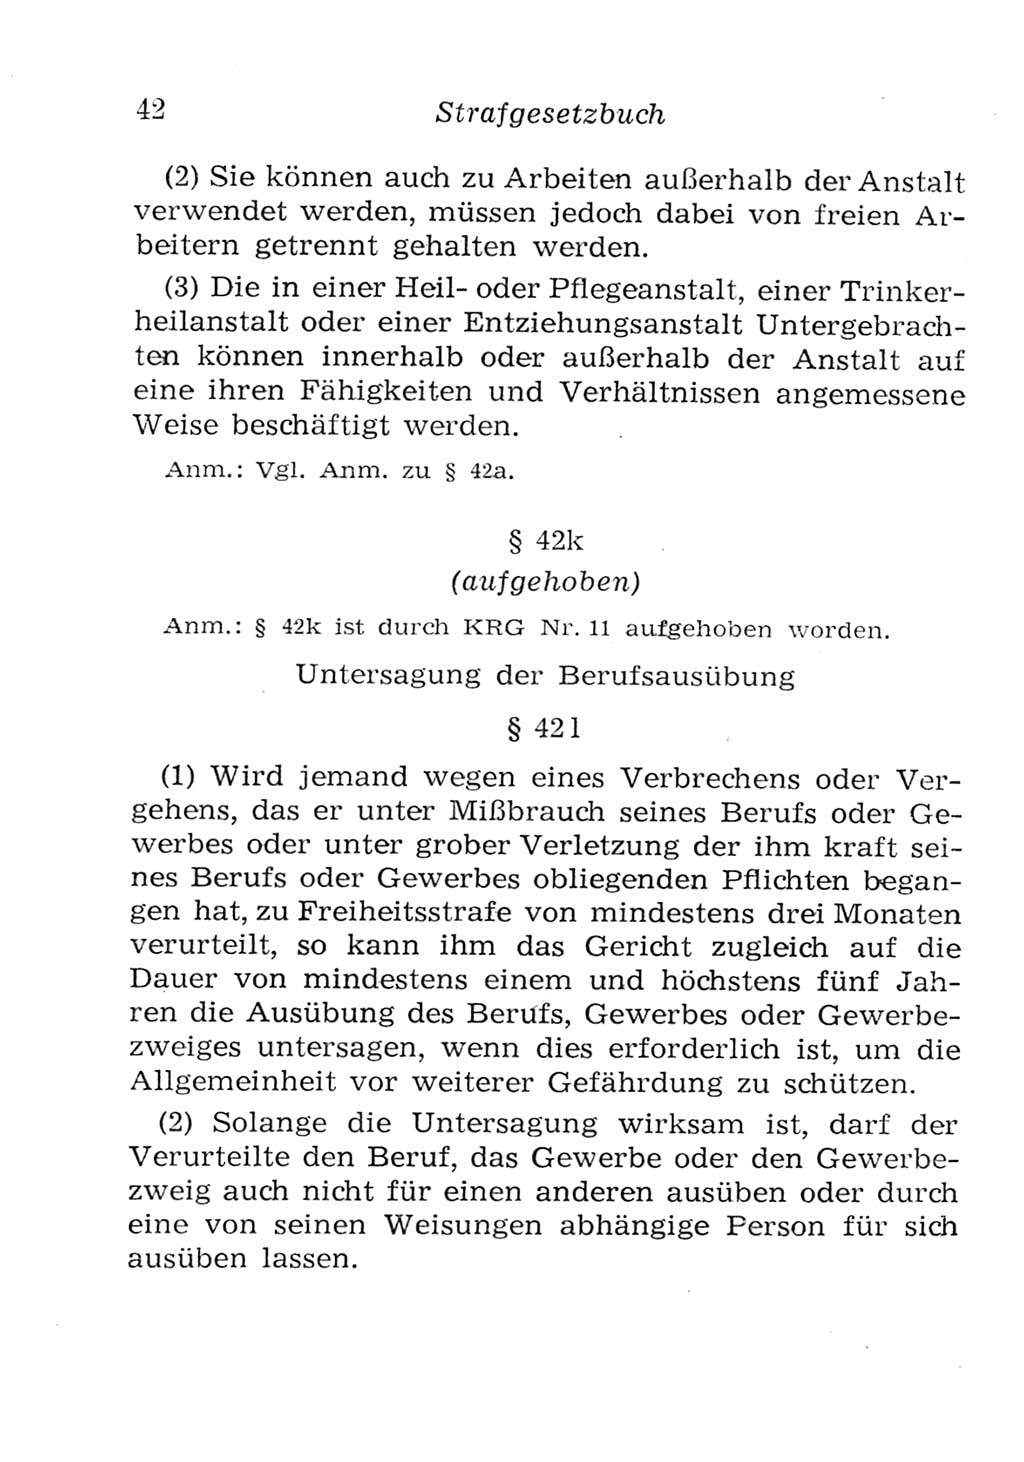 Strafgesetzbuch (StGB) und andere Strafgesetze [Deutsche Demokratische Republik (DDR)] 1957, Seite 42 (StGB Strafges. DDR 1957, S. 42)